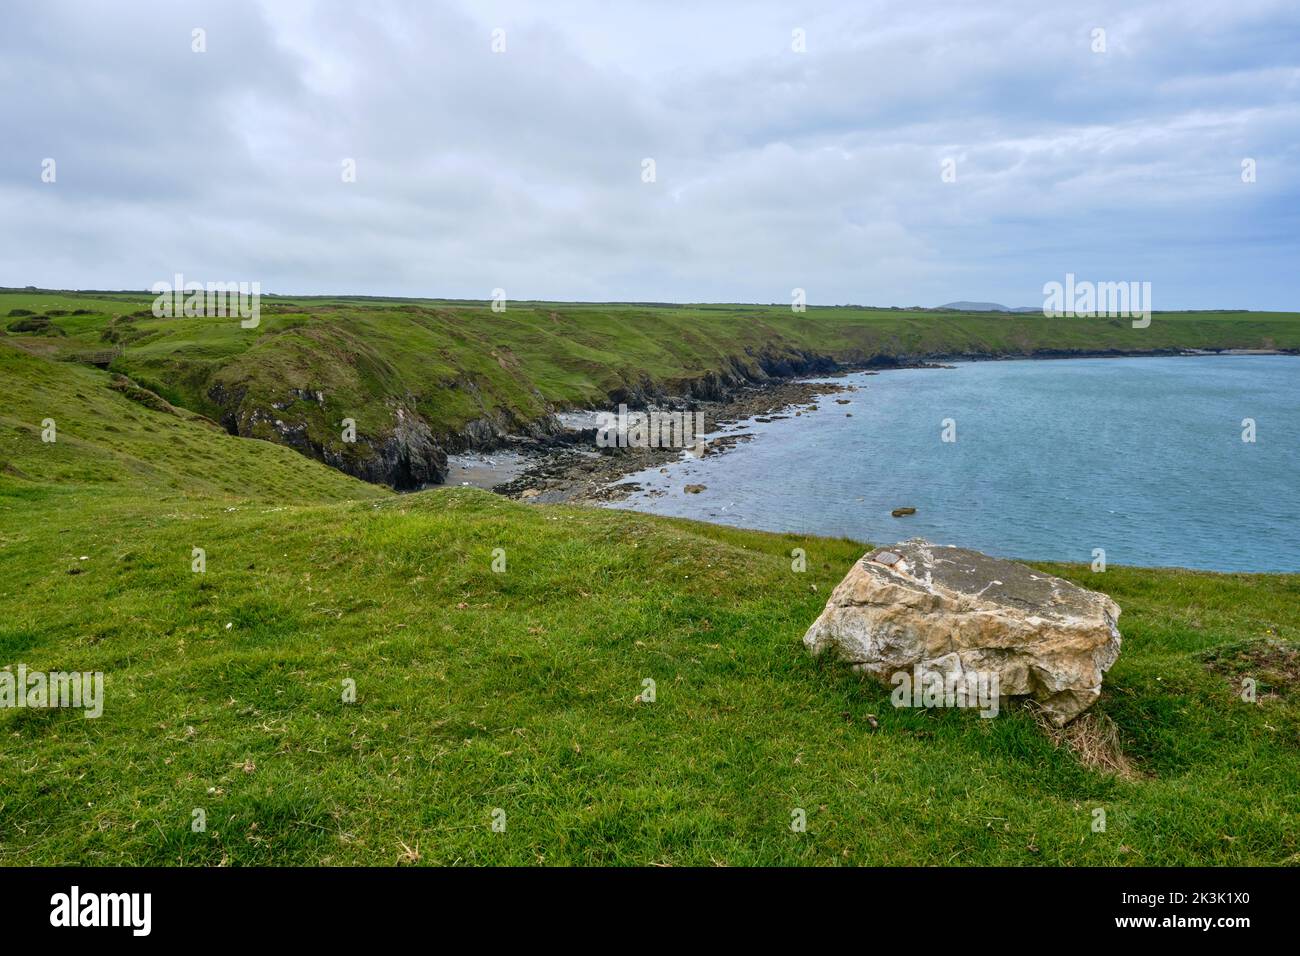 Un rocher offre un siège naturel pour admirer la côte de la péninsule de Llyn le long du Wales Coast Path Banque D'Images